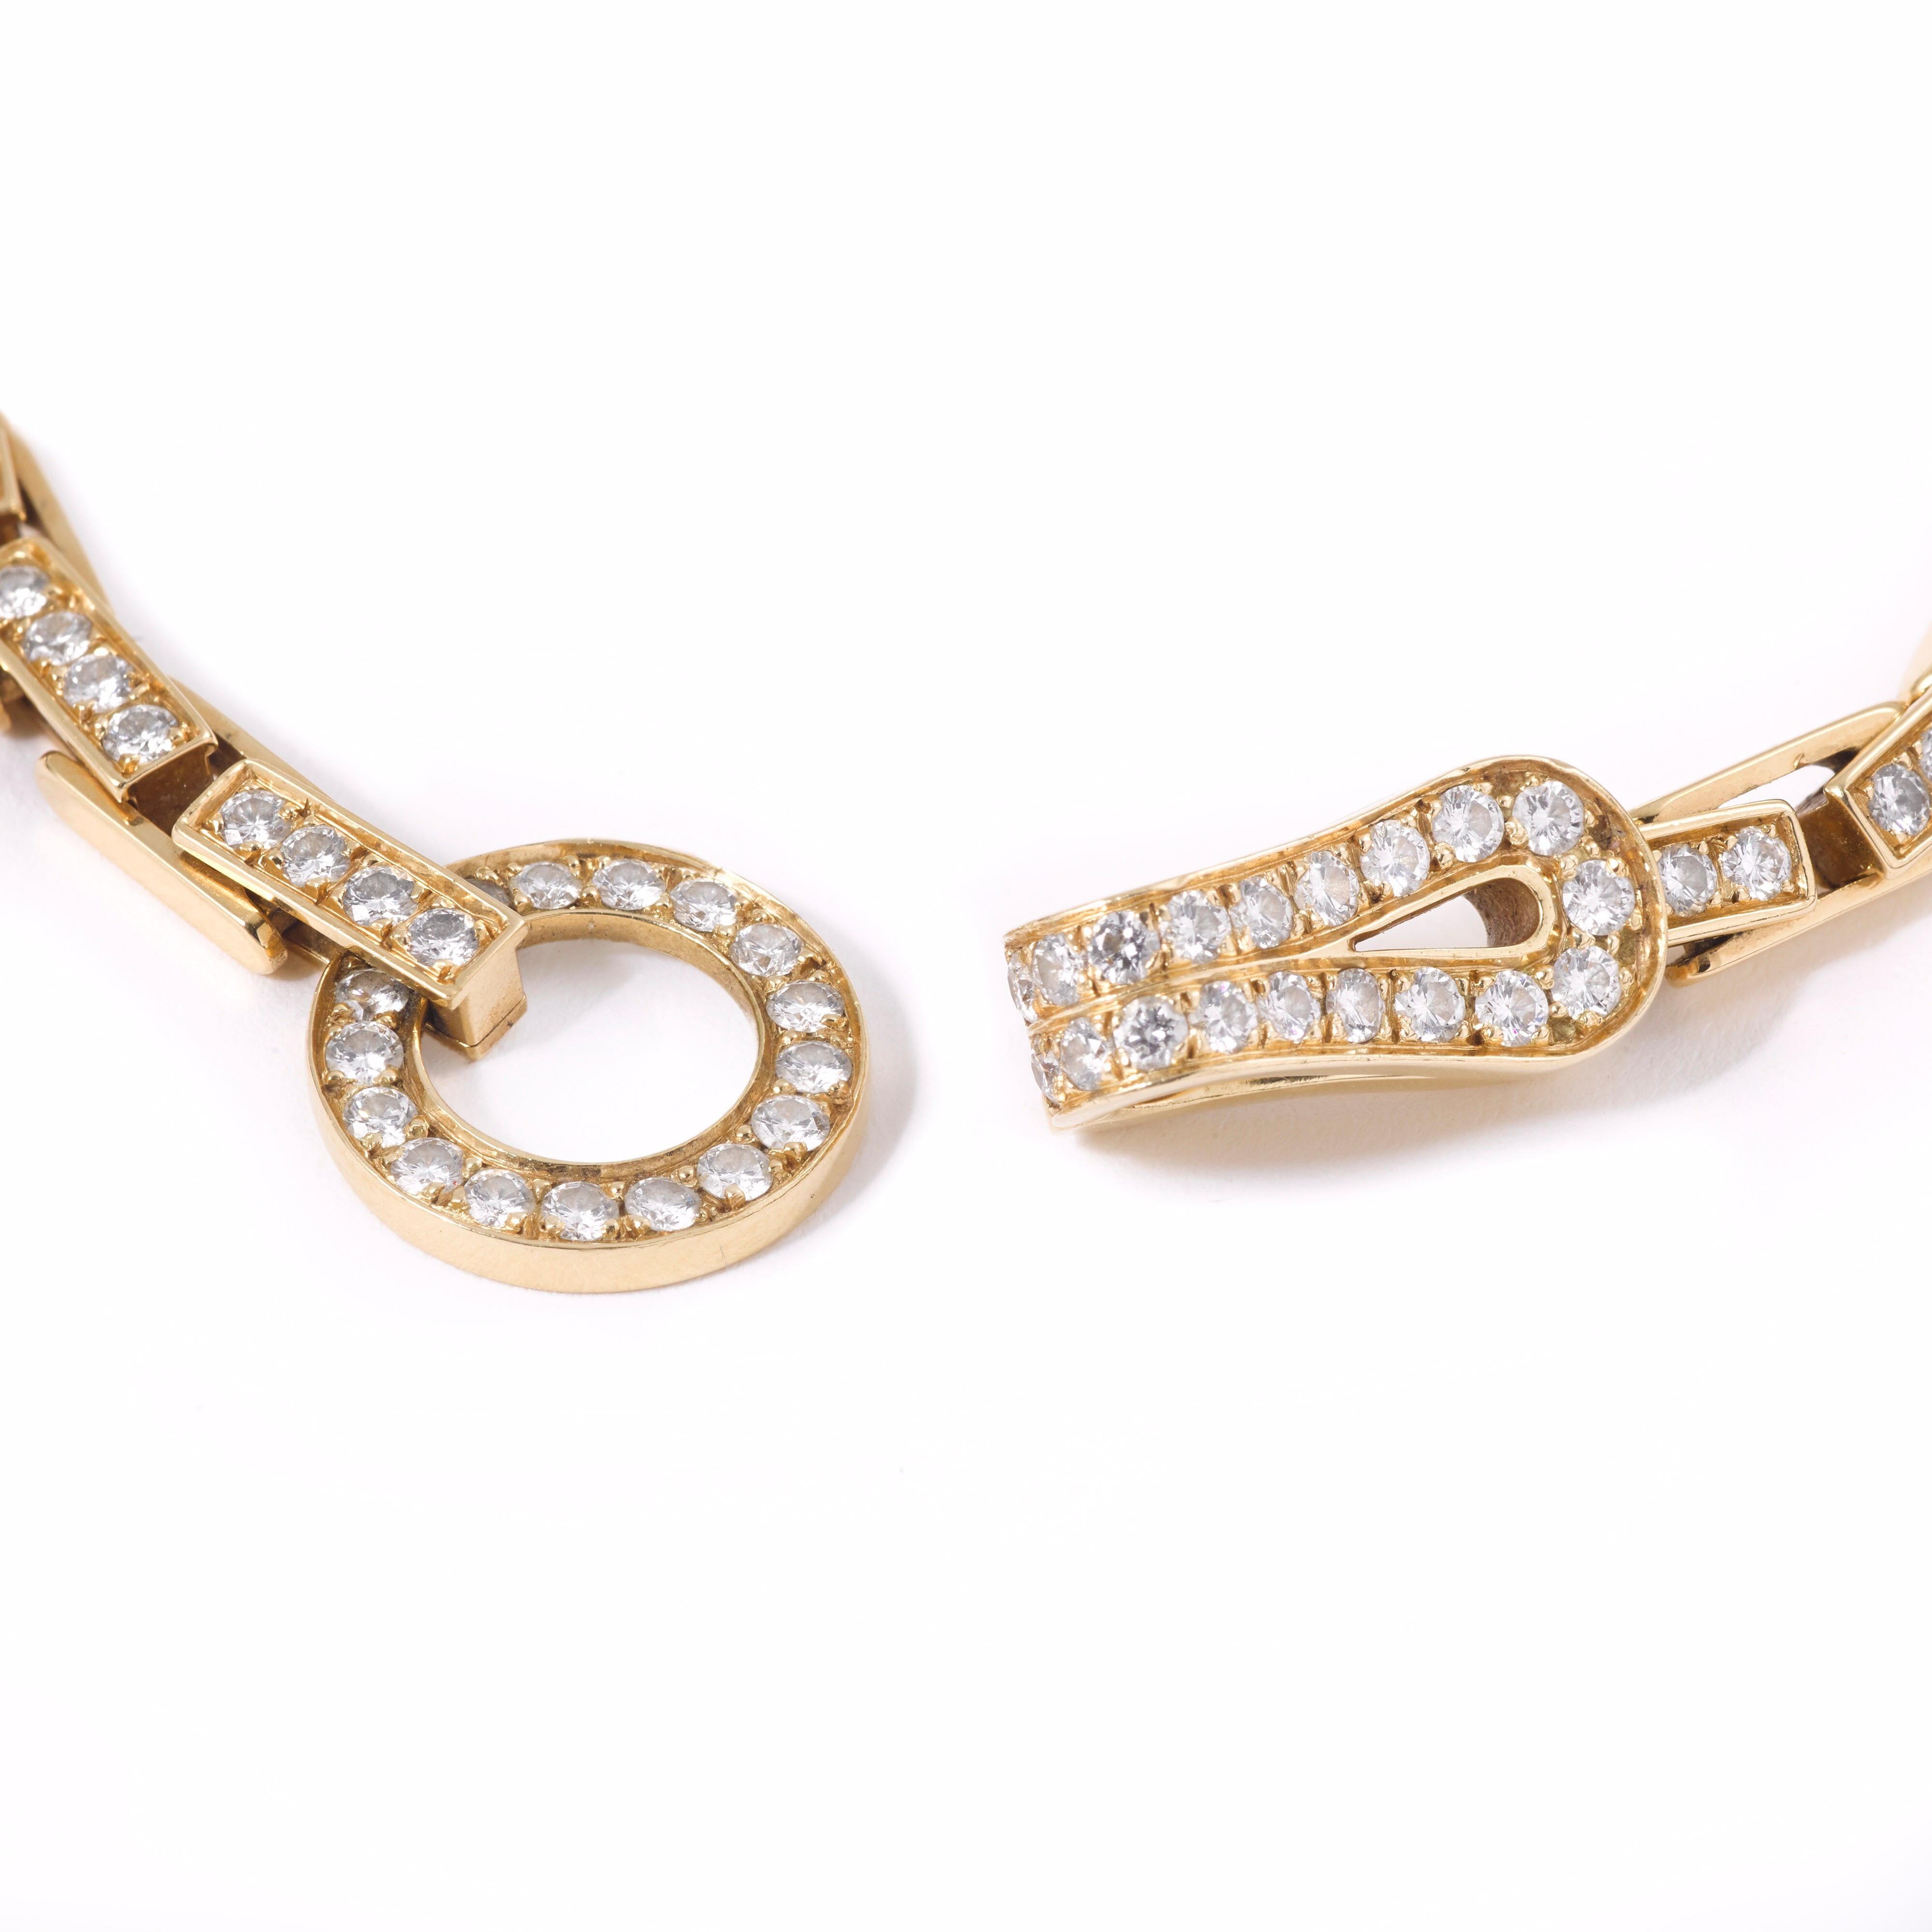 Erstaunlich ikonischen Cartier Agrafe Diamanten 18k Gelbgold Armband. 

Die Agrafe-Kollektion (das Wort Agrafe bedeutet auf Französisch Clip/Haken und bezieht sich auf den hakenförmigen Verschluss der Halskette) ist bei Cartier nicht mehr